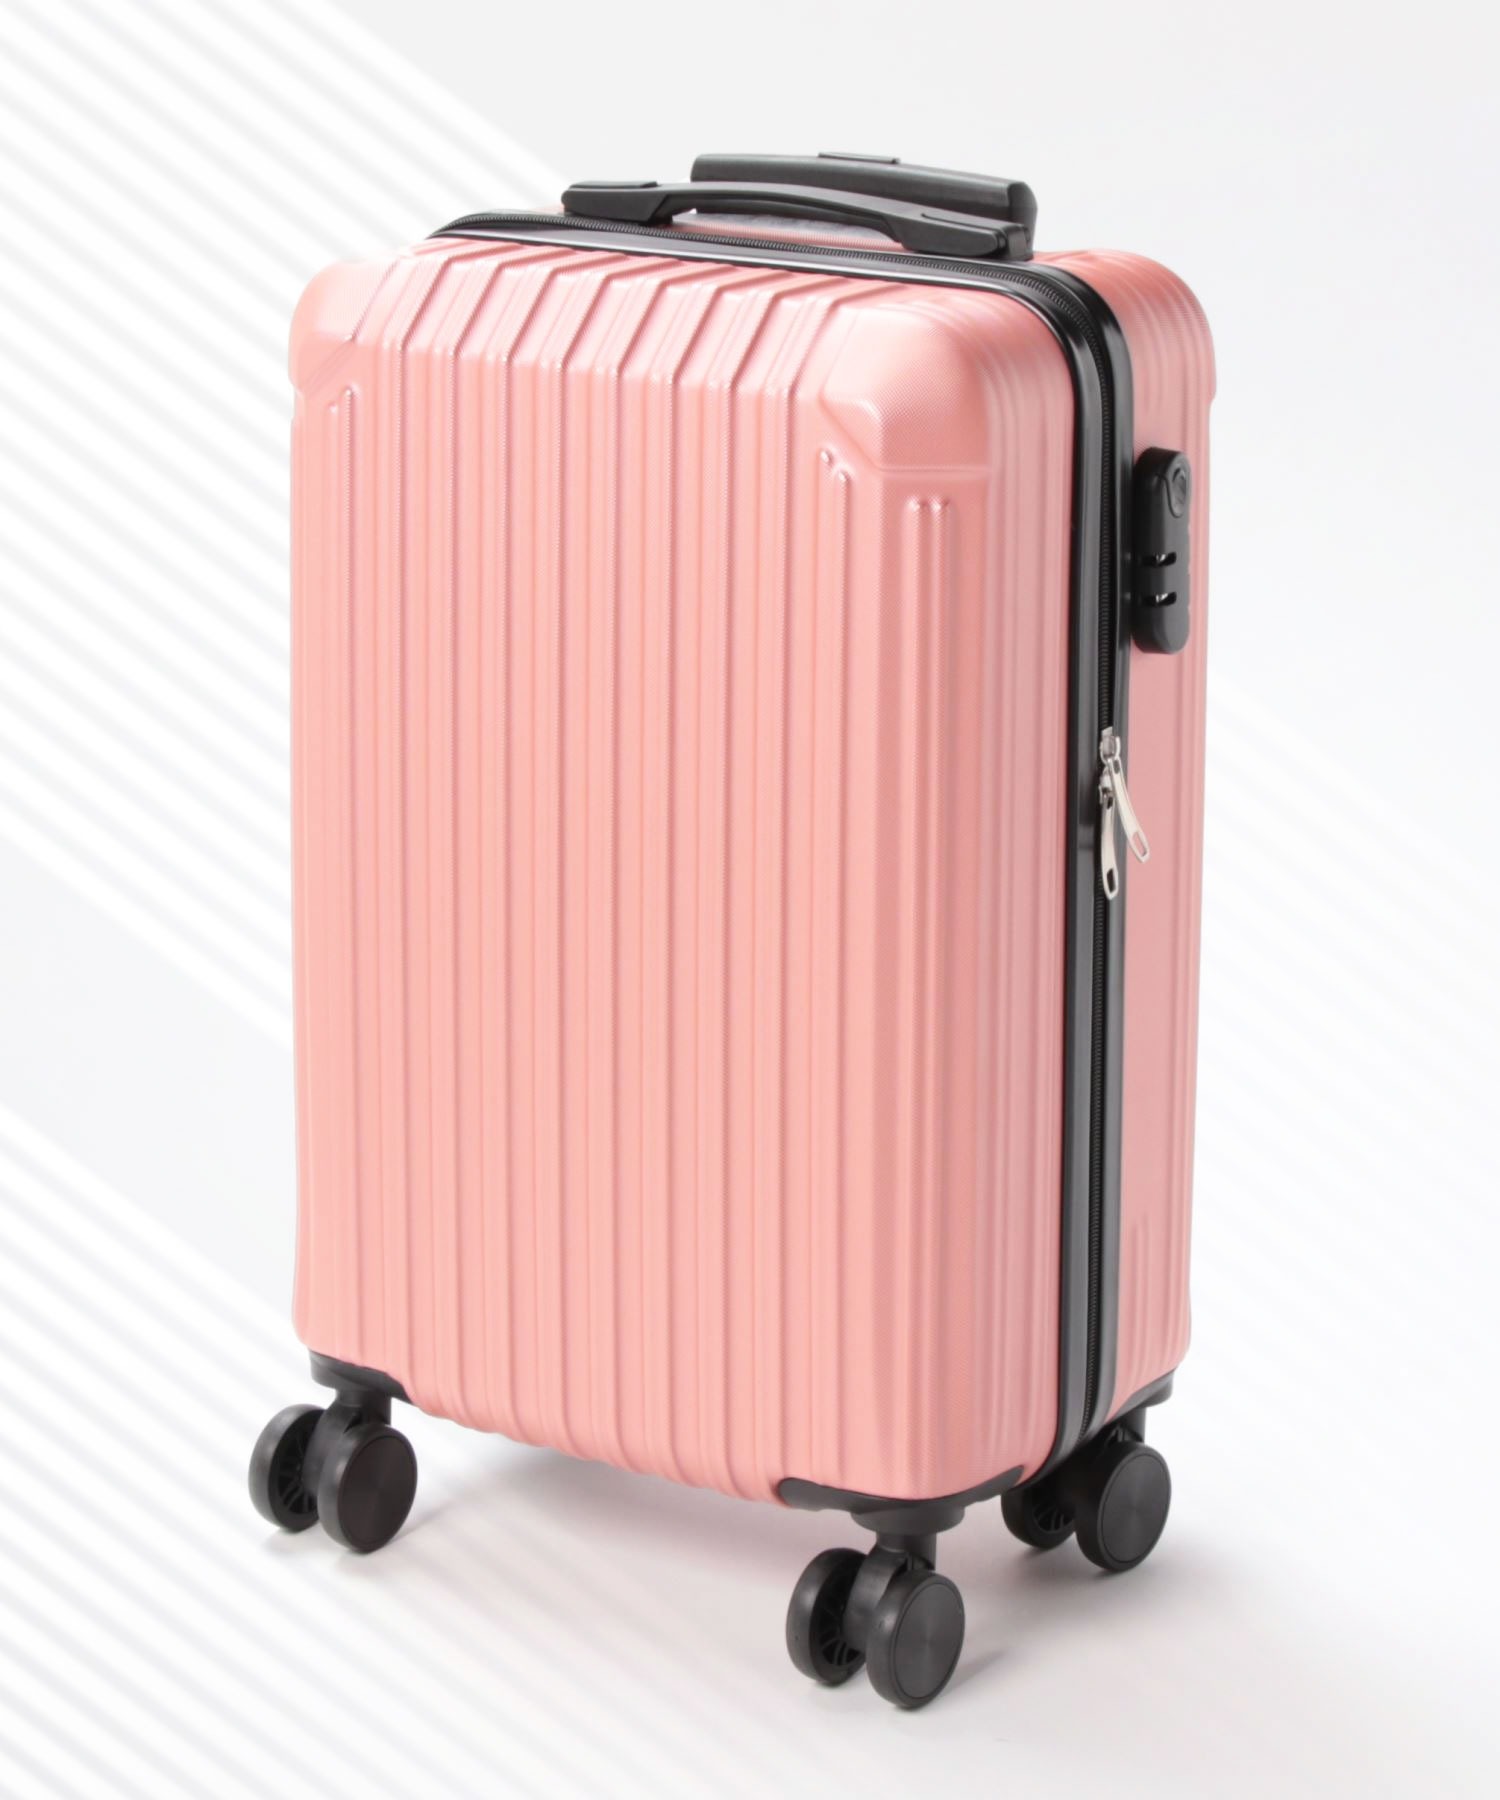 スーツケース mサイズ sサイズ キャリーケース キャリーバッグ 2サイズ 軽量 大容量 レディース メンズ ユニセックス 360度回転 静音  ダイヤル式 ロック